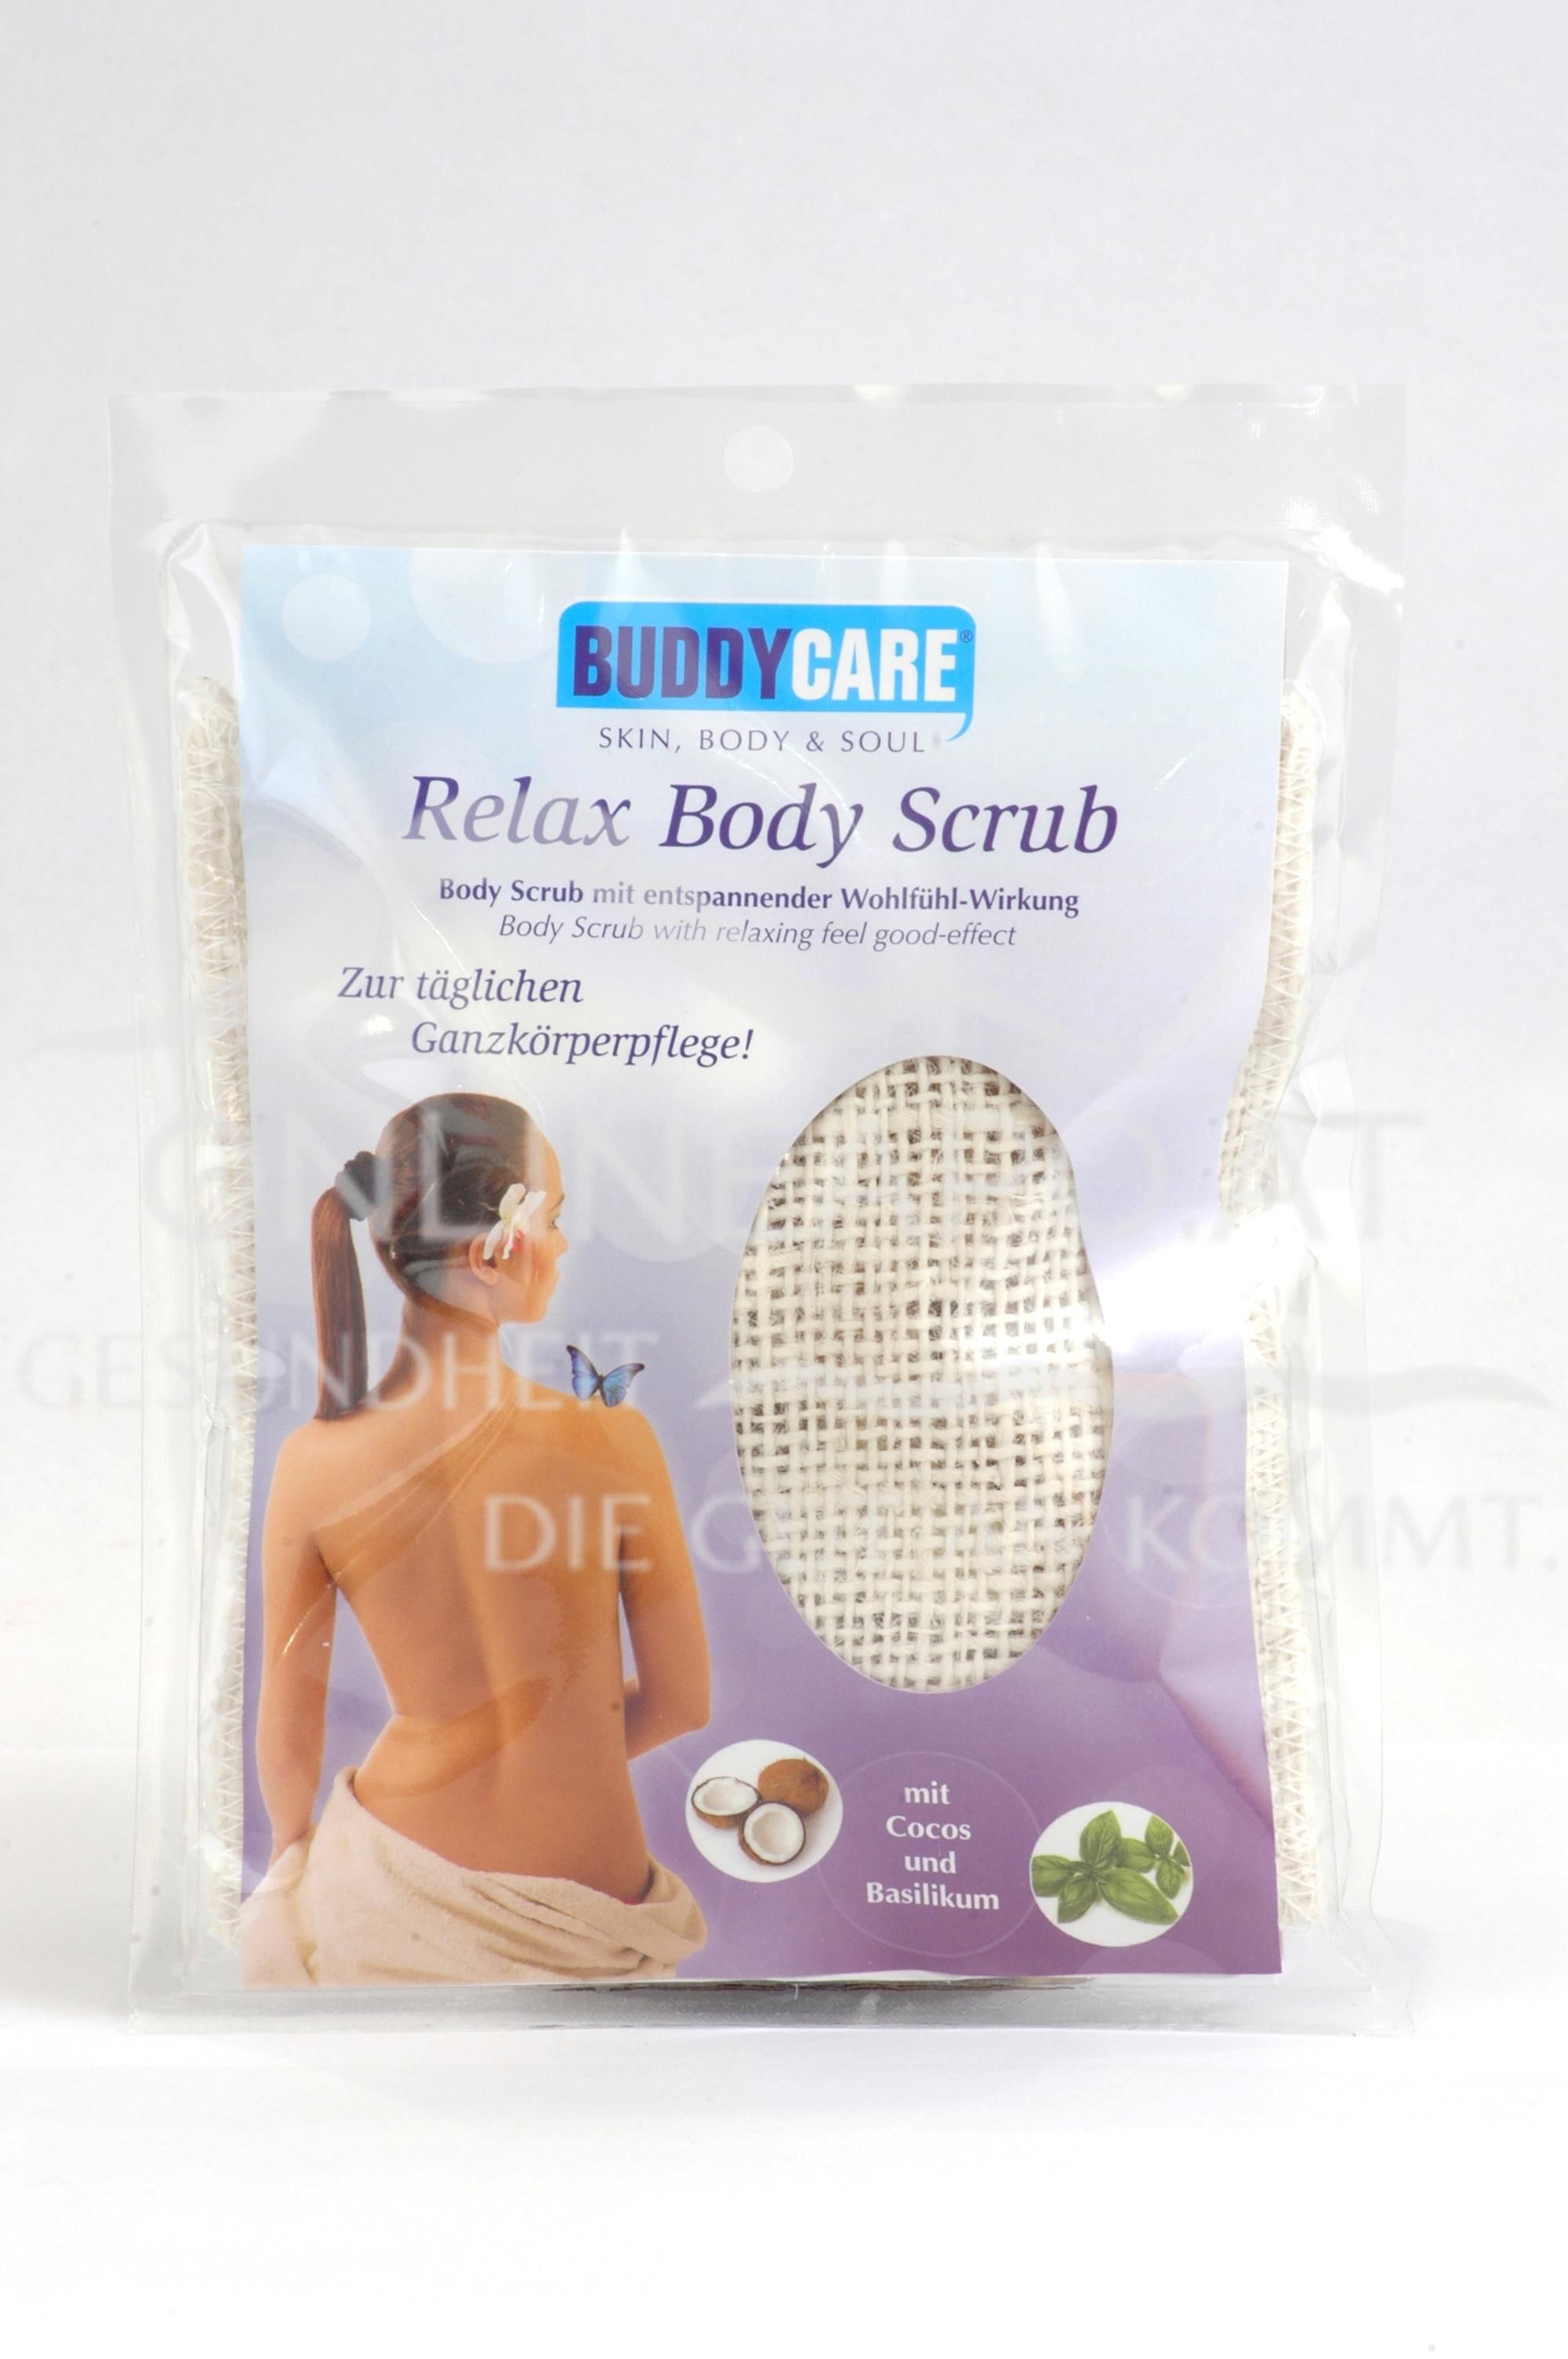 BUDDYCARE™ - Relax Body Scrub mit entspannender Wohlfühl-Wirkung